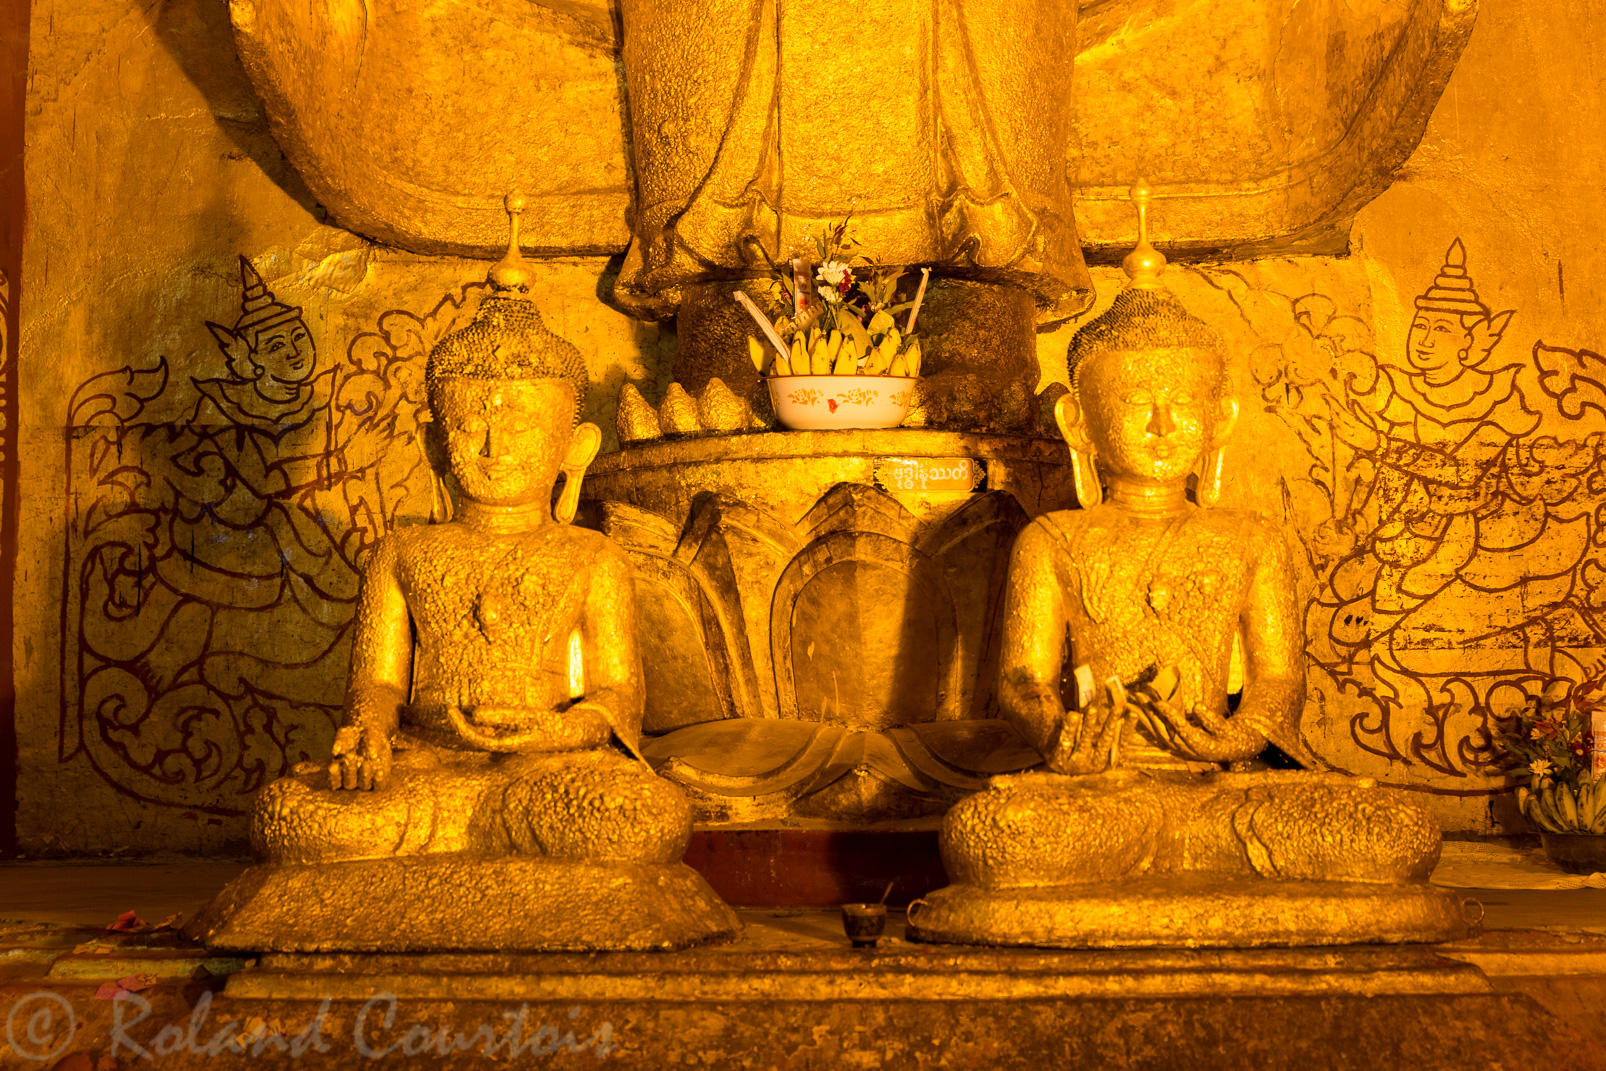 Dans ce temple il y a 4 Bouddhas majestueux debout, tournés vers les quatre points cardinaux. Celui-ci est tourné vers l'ouest avec à ses pieds deux statuettes représentant le roi Kyan-Zittha et le moine Shin Arahan.